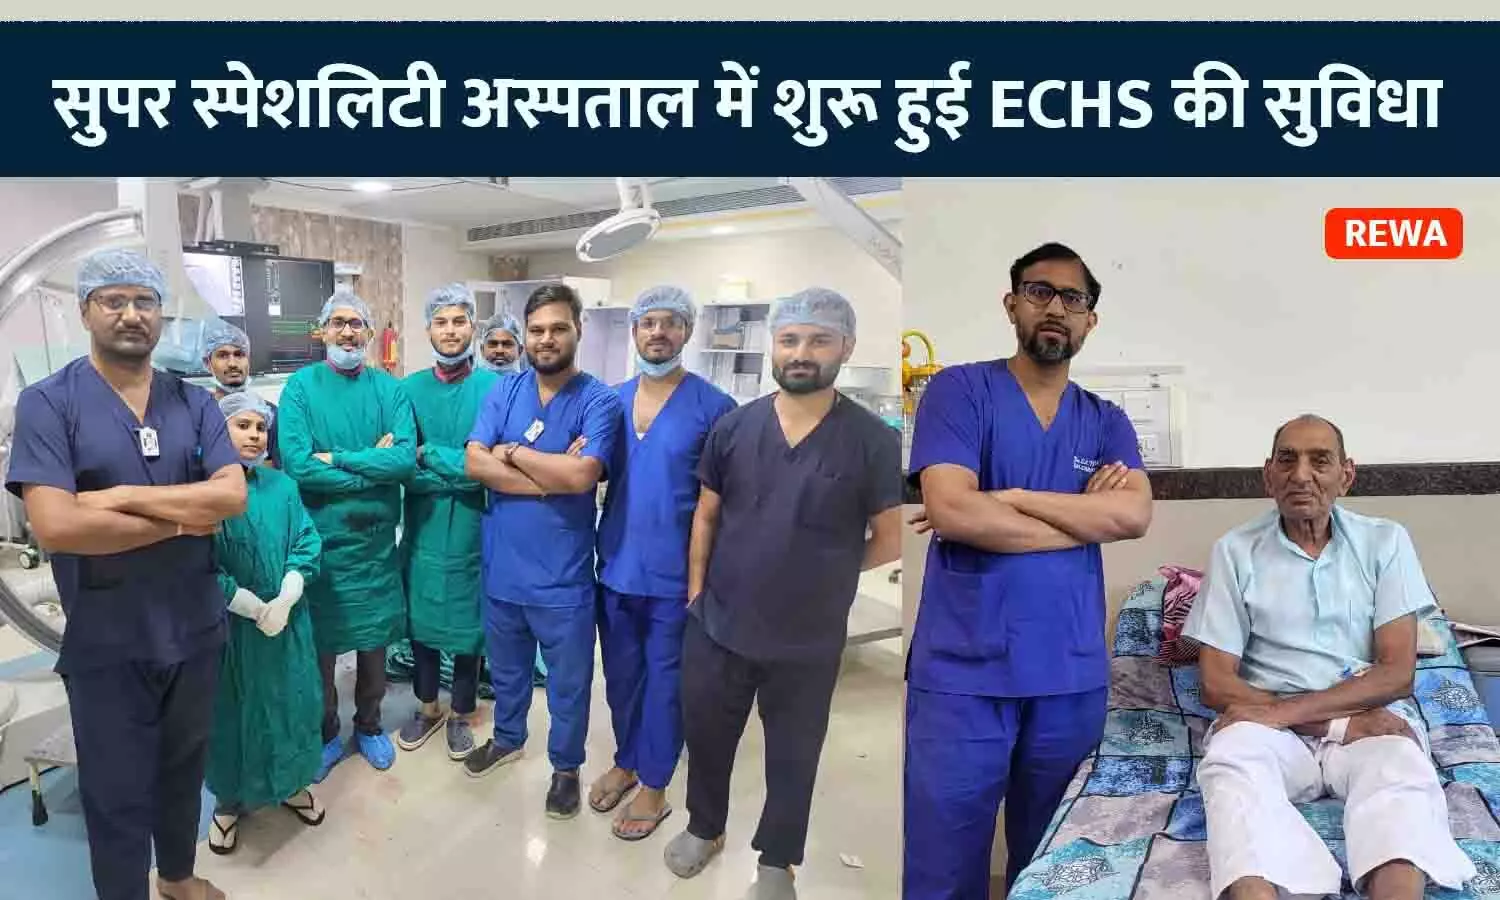 रीवा के सुपर स्पेशलिटी अस्पताल में शुरू हुई ECHS की सुविधा, पूर्व सैनिक की निःशुल्क एंजियोप्लास्टी कर बचाई गई जान